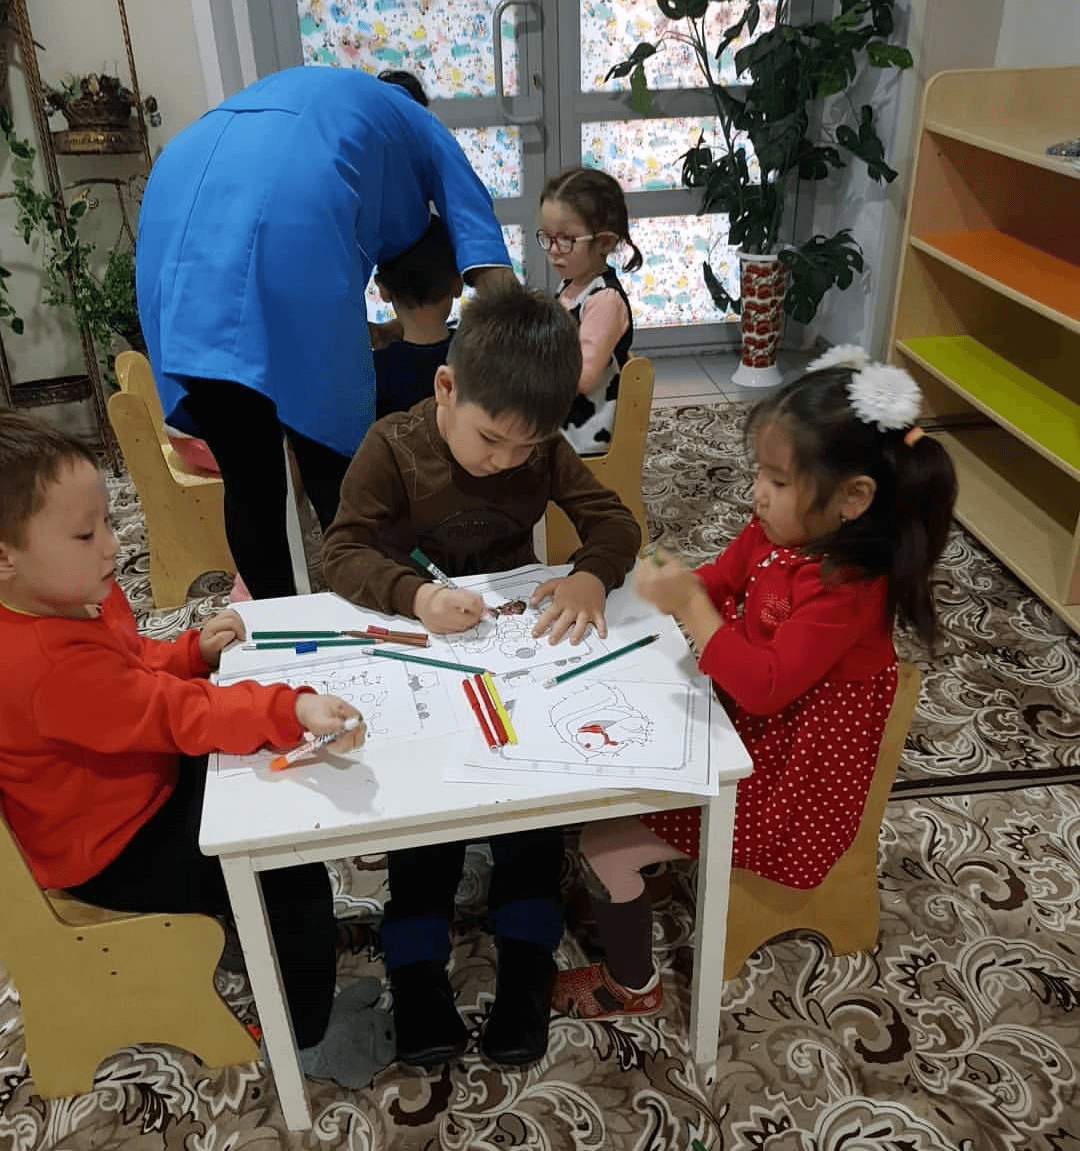 Островок детского счастья открылся в Карагандинской области благодаря государственной поддержке